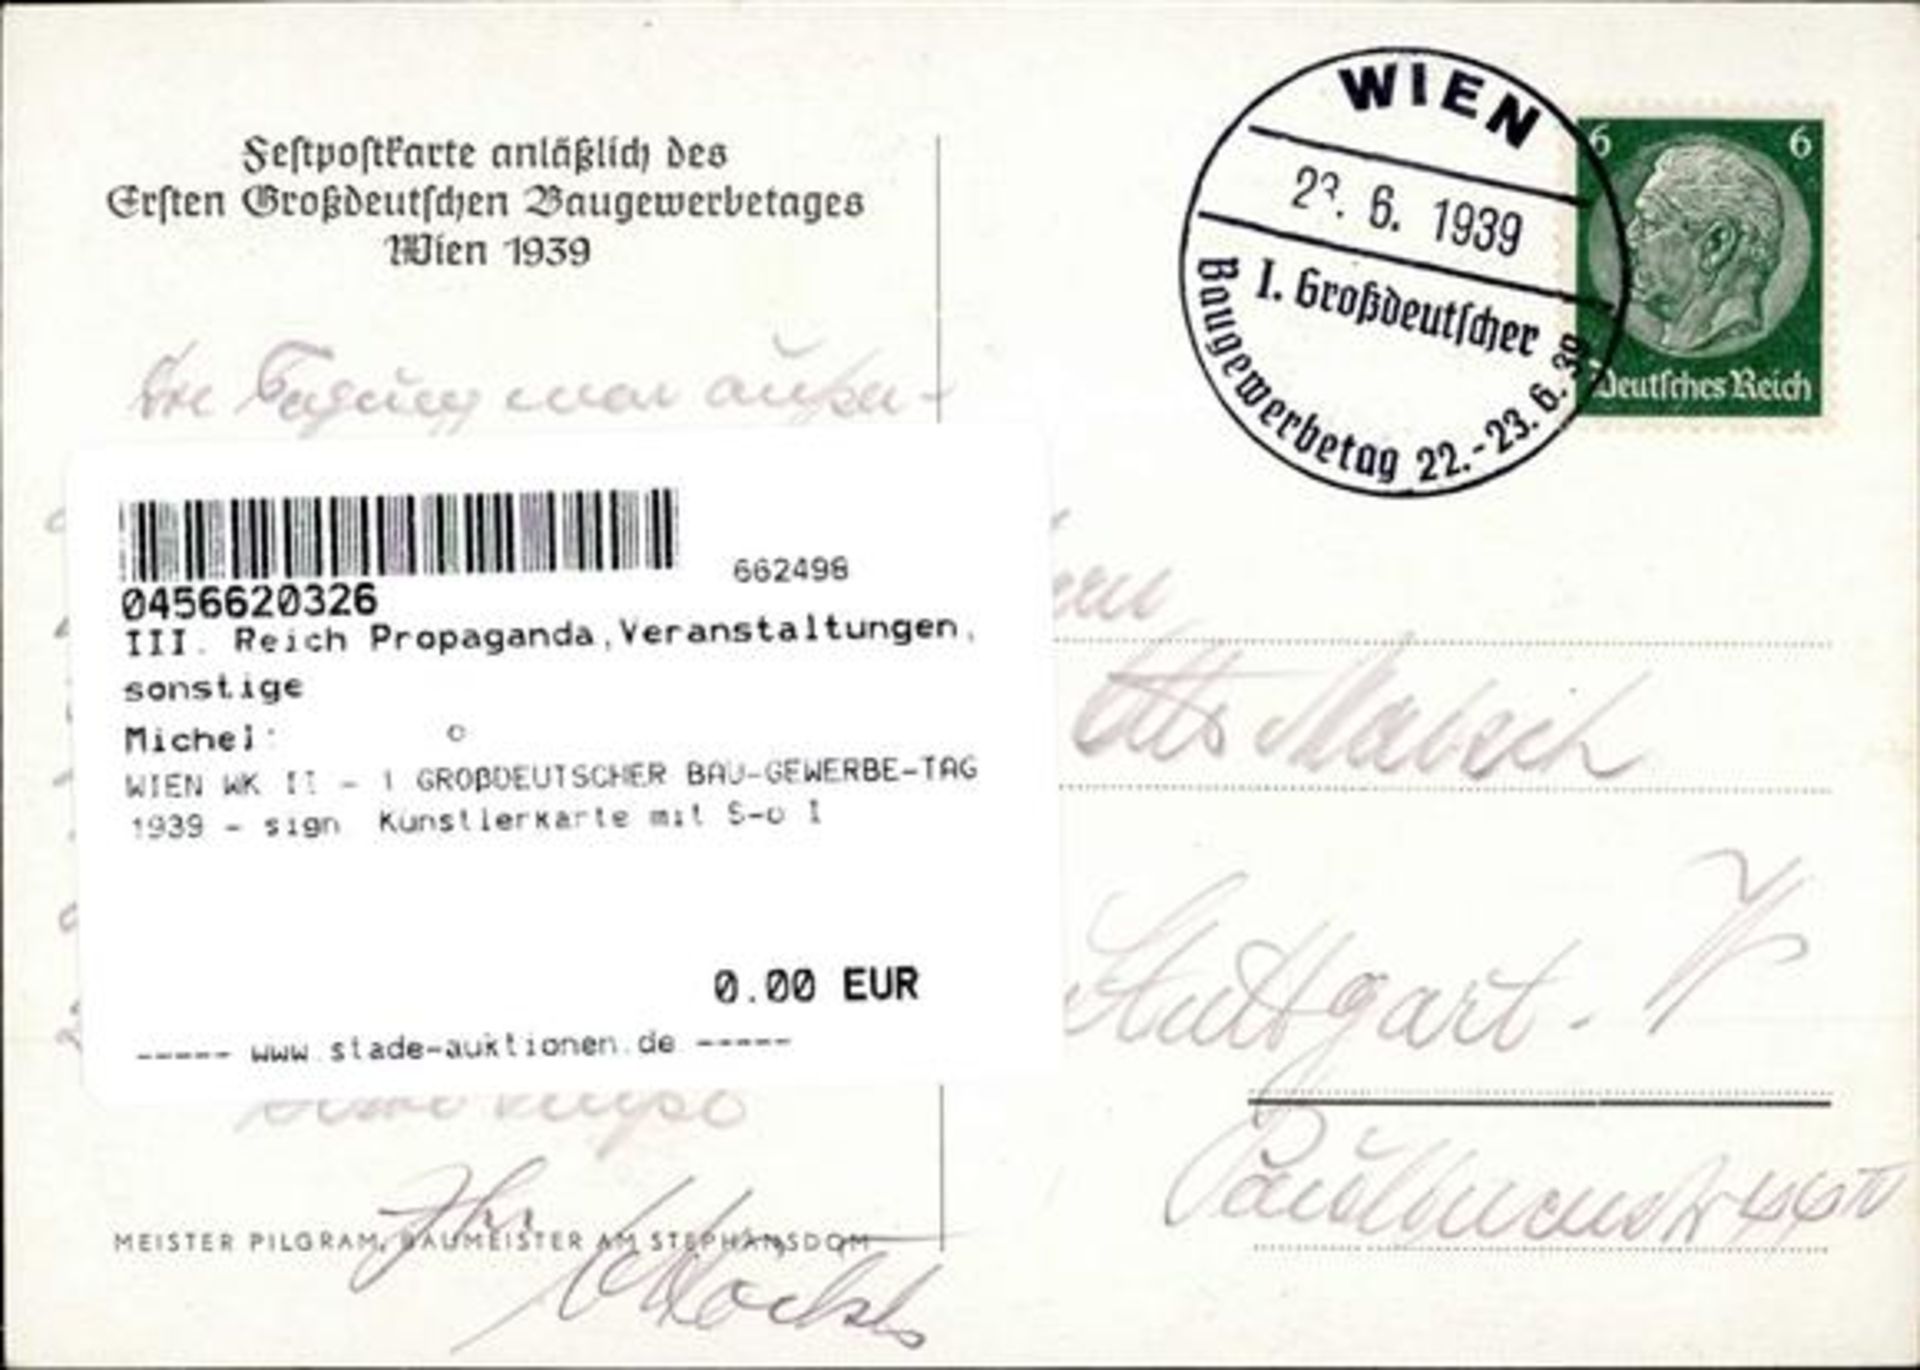 WIEN WK II - 1.GROßDEUTSCHER BAU-GEWERBE-TAG 1939 - sign. Künstlerkarte mit S-o I - Bild 2 aus 2